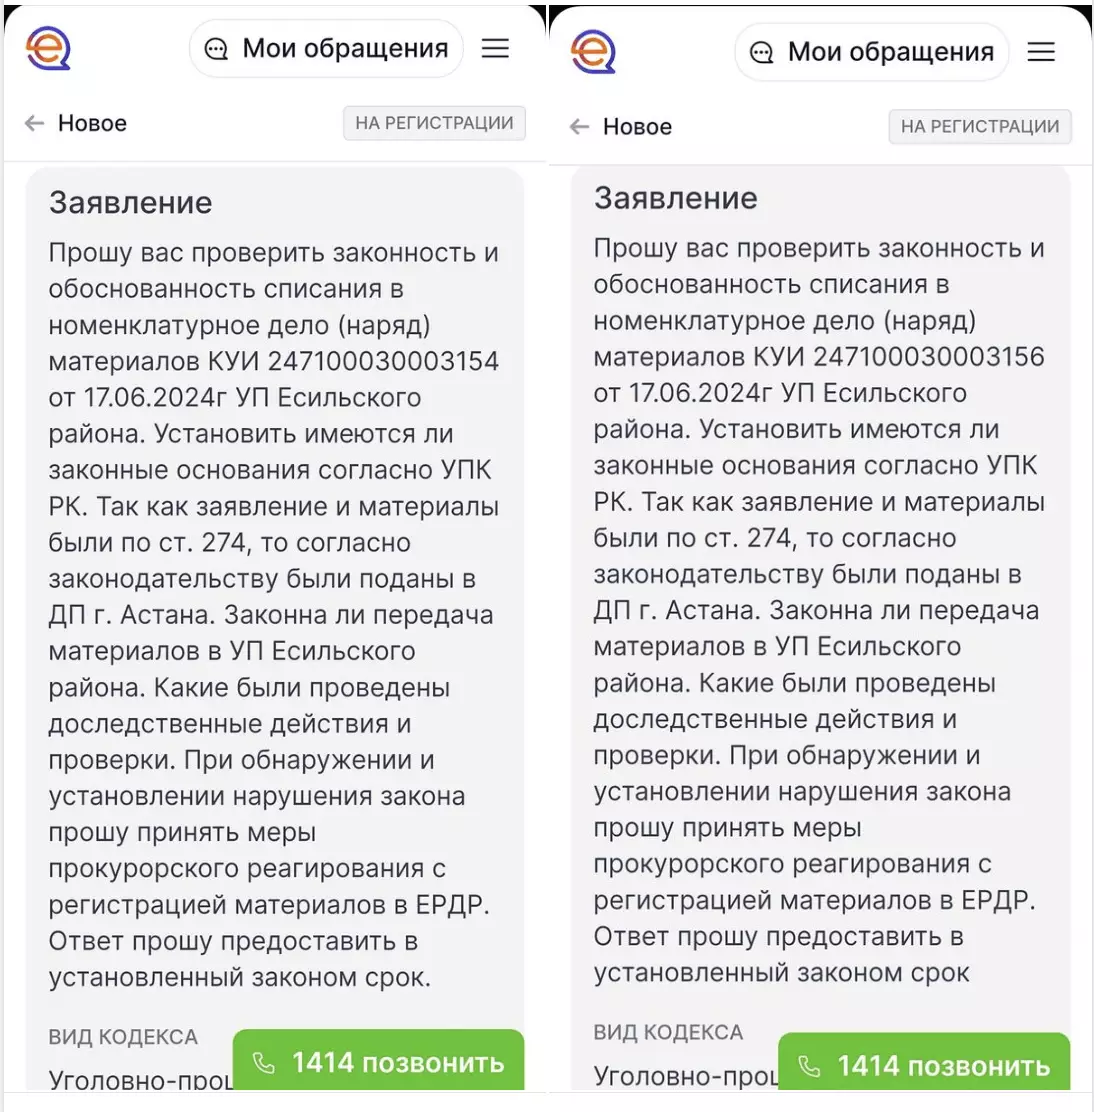 Марат Турымбетов подал жалобу на моментальное списание в наряд заявления о распространении заведомо ложной информации Скляром и Шарлапаевым